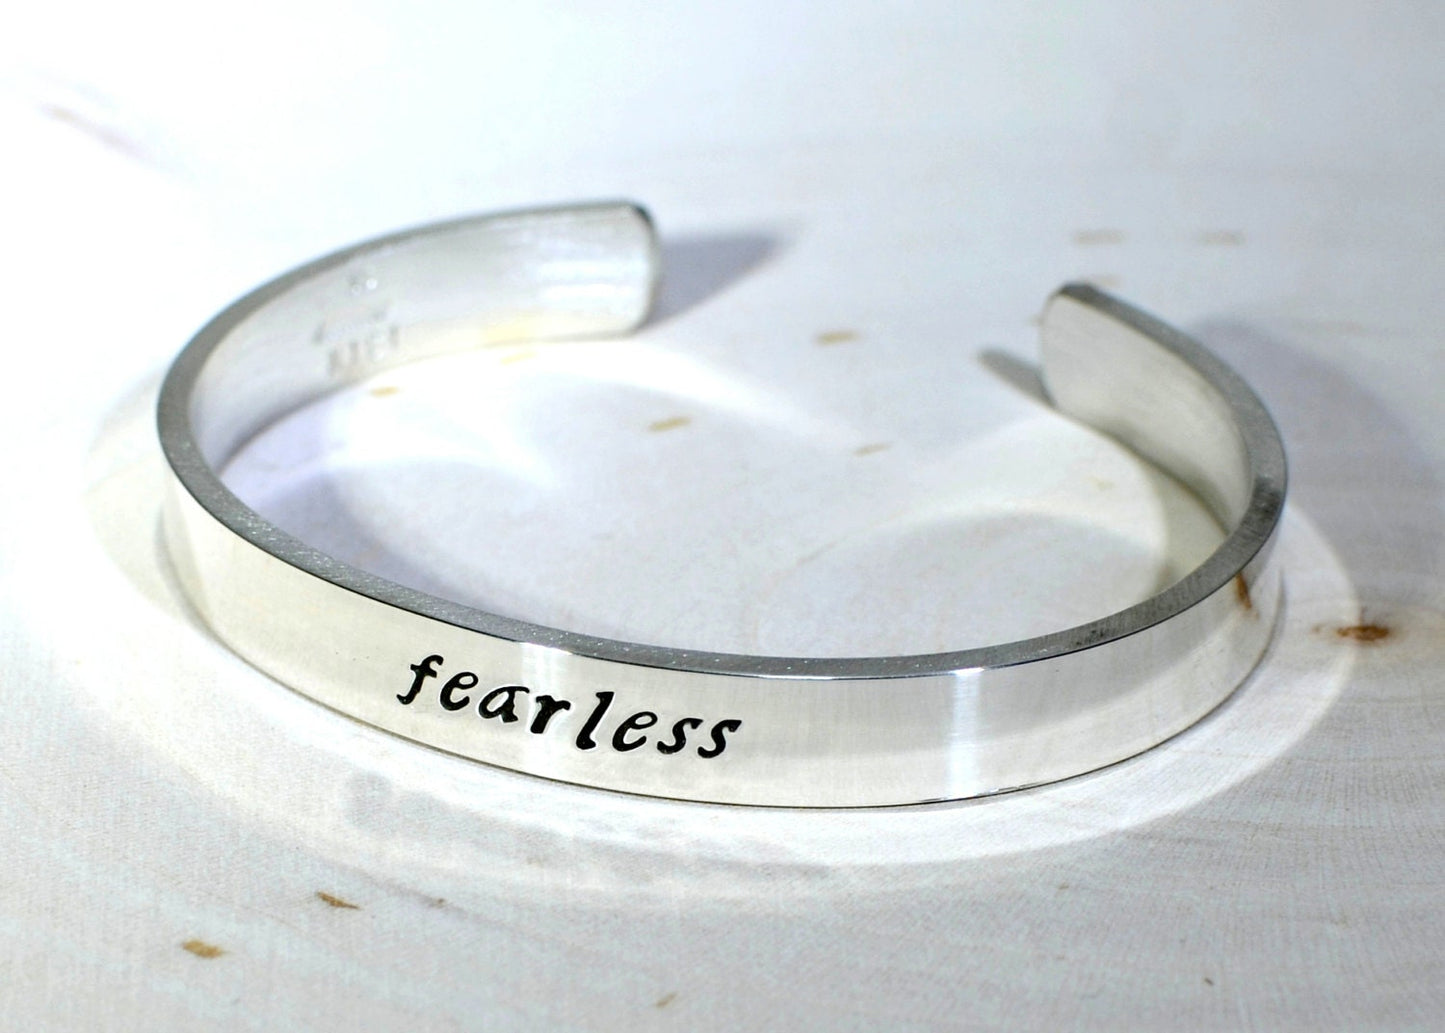 Fearless Sterling Silver Bracelet